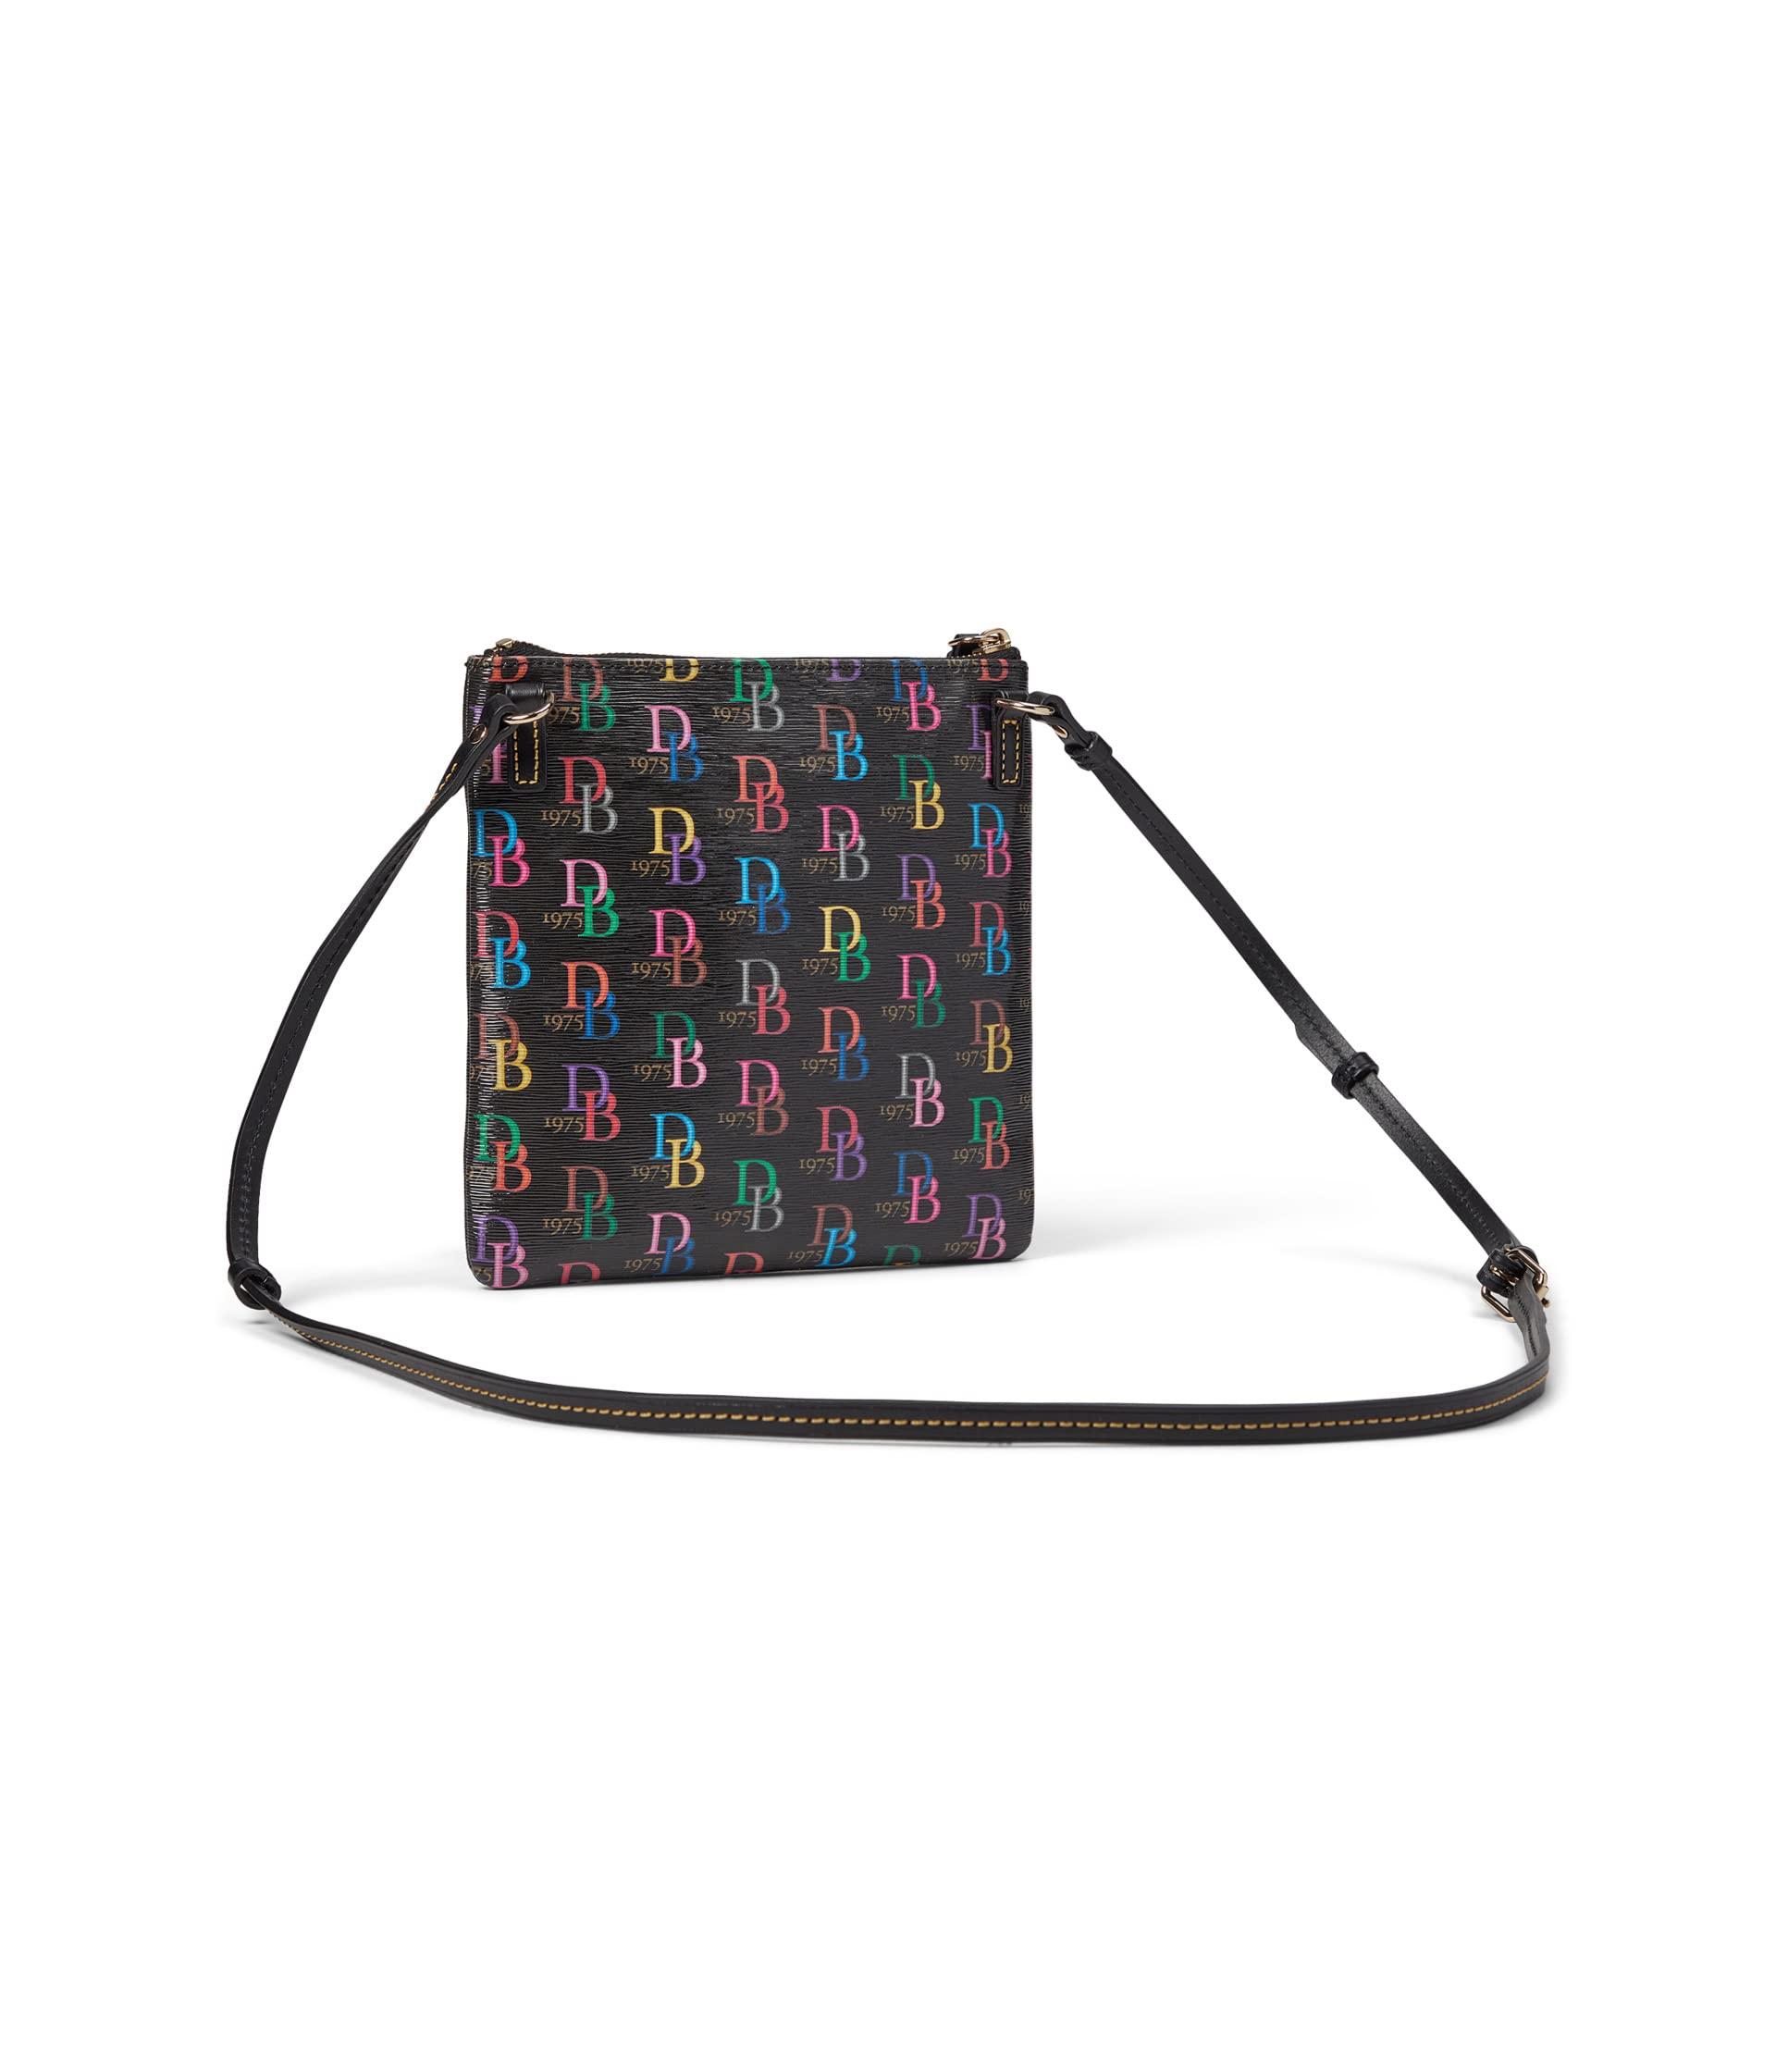 Dooney & Bourke Pebble Double Zip Tassel Crossbody Handbags : One Size